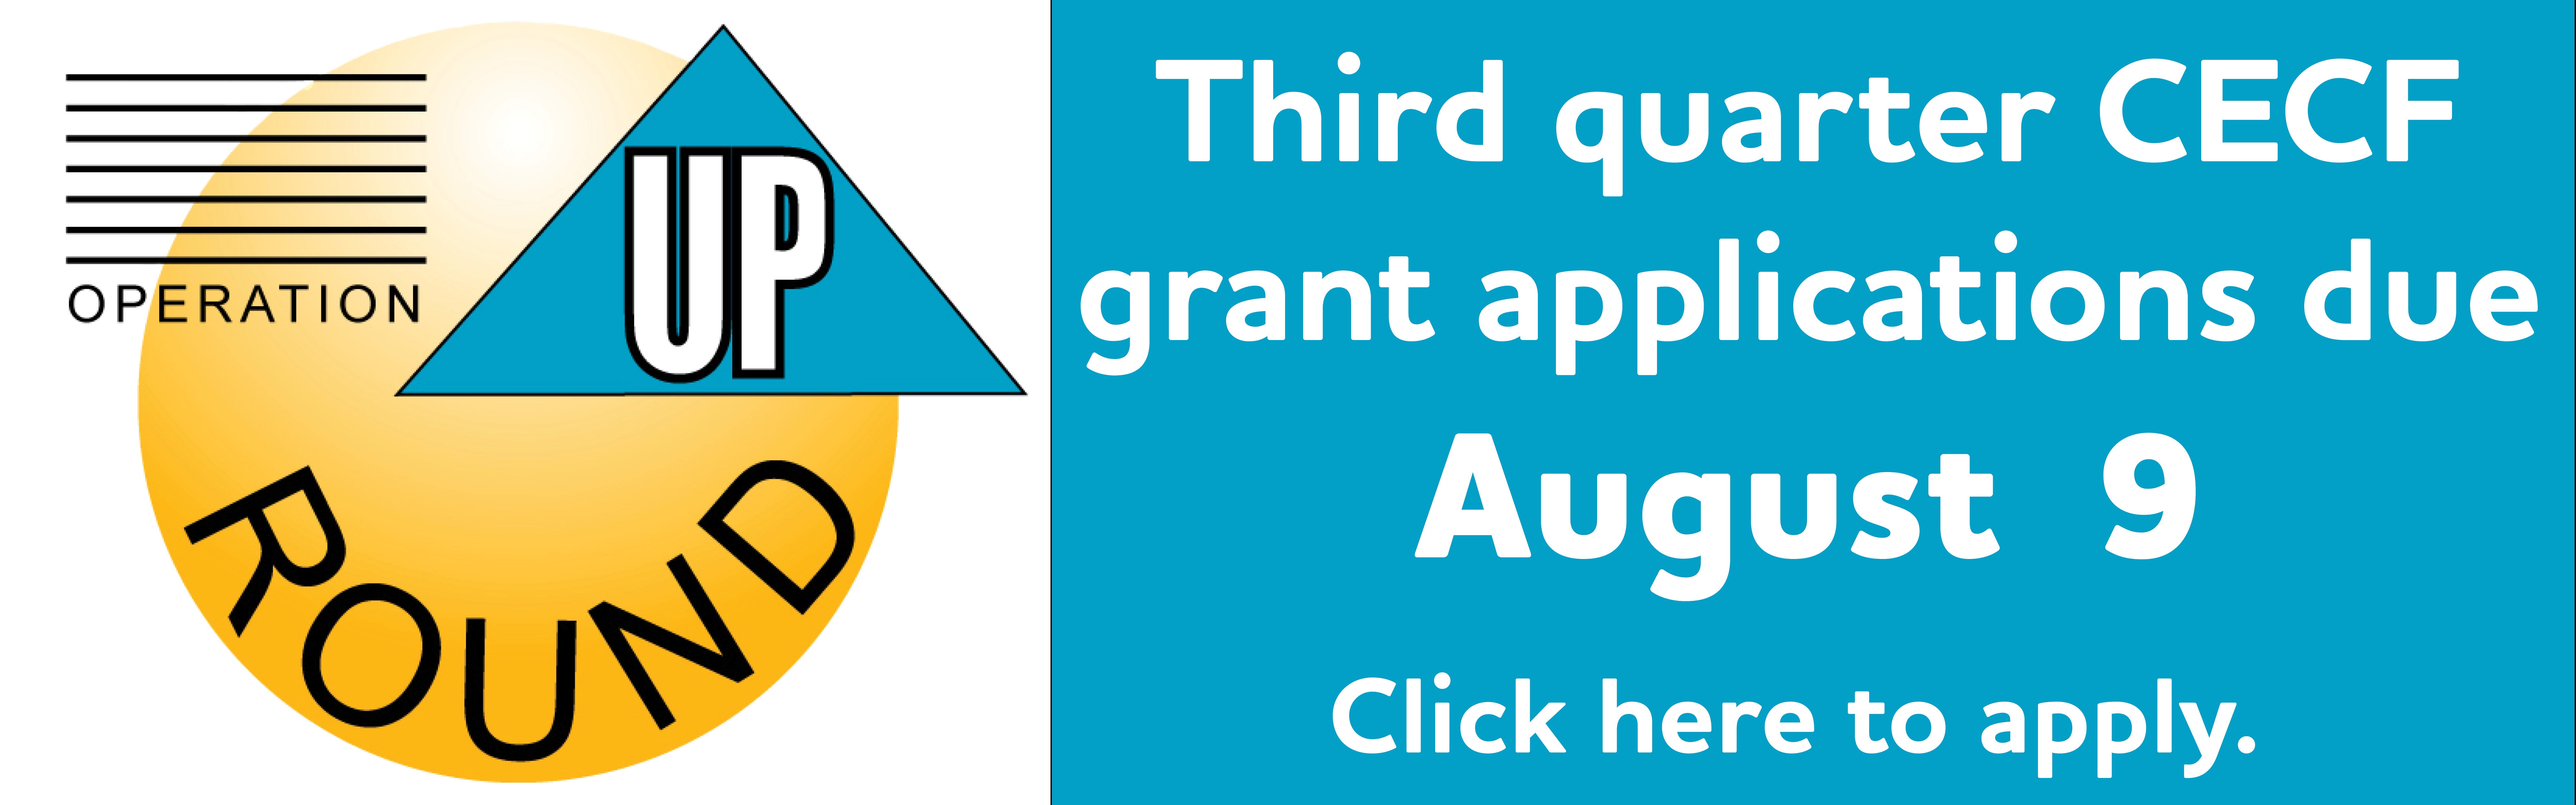 Third quarter grant deadline